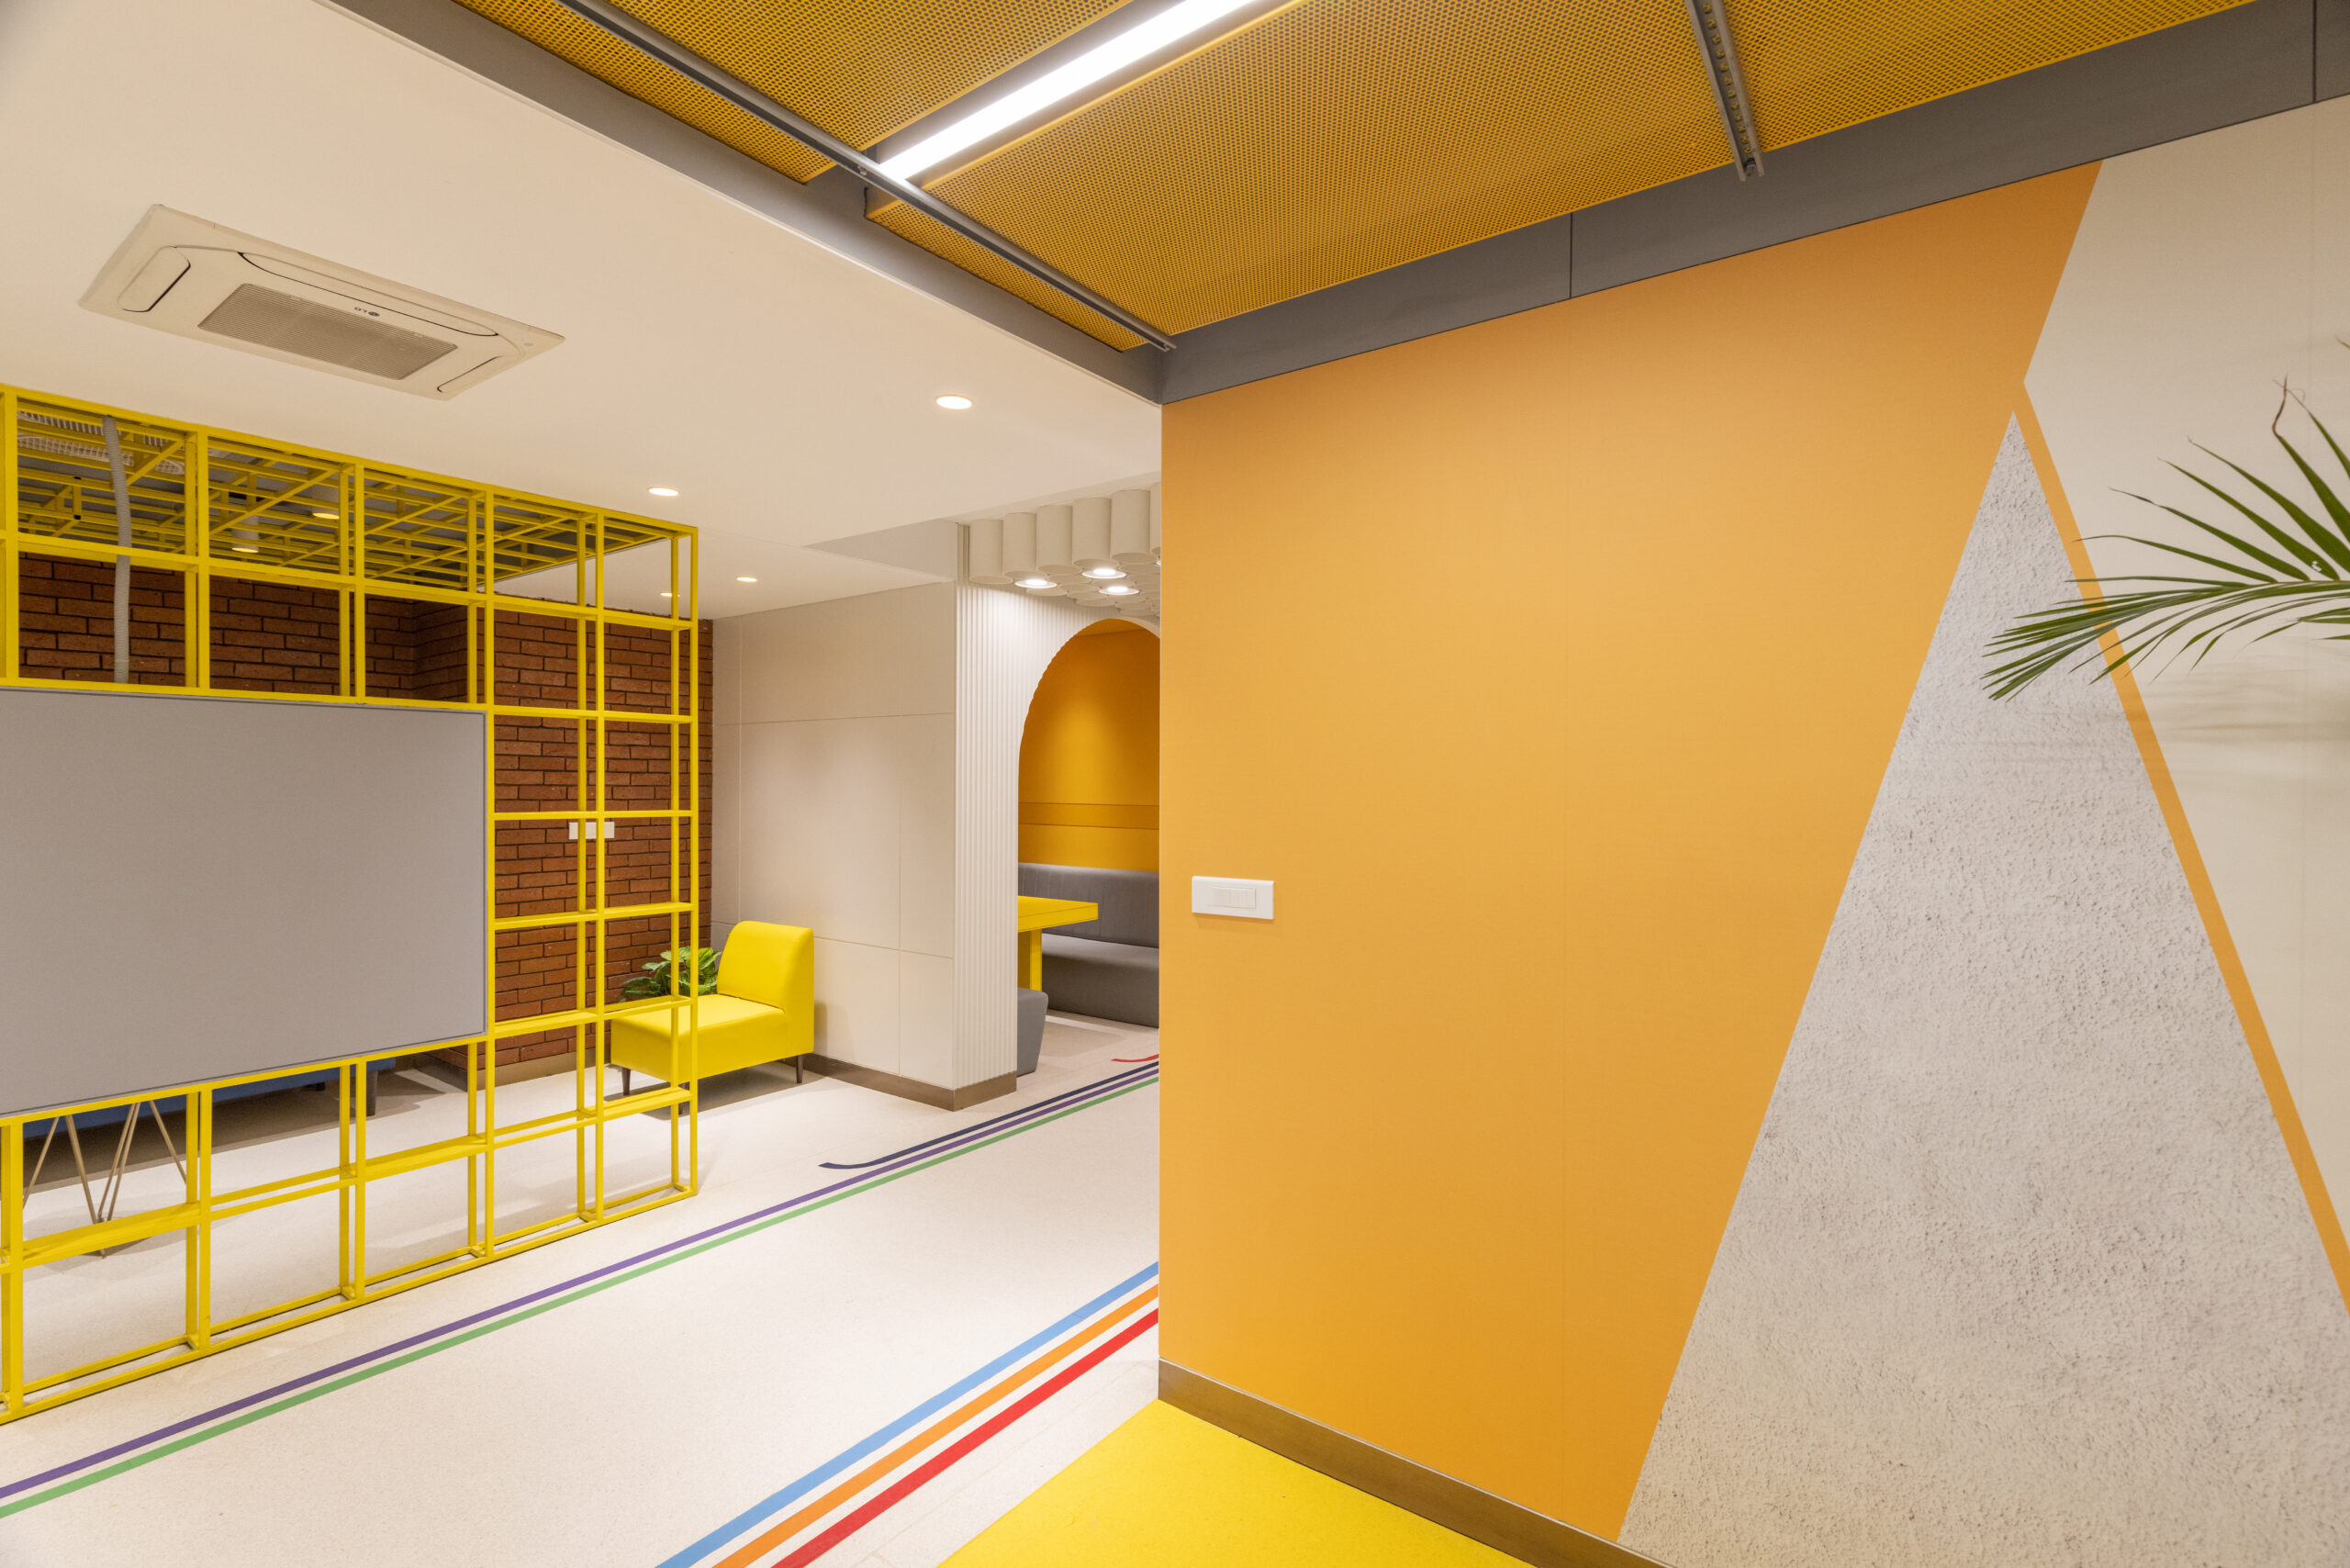 Resaiki Interiors and Architecture Design Studio: Creating Holistic Spaces